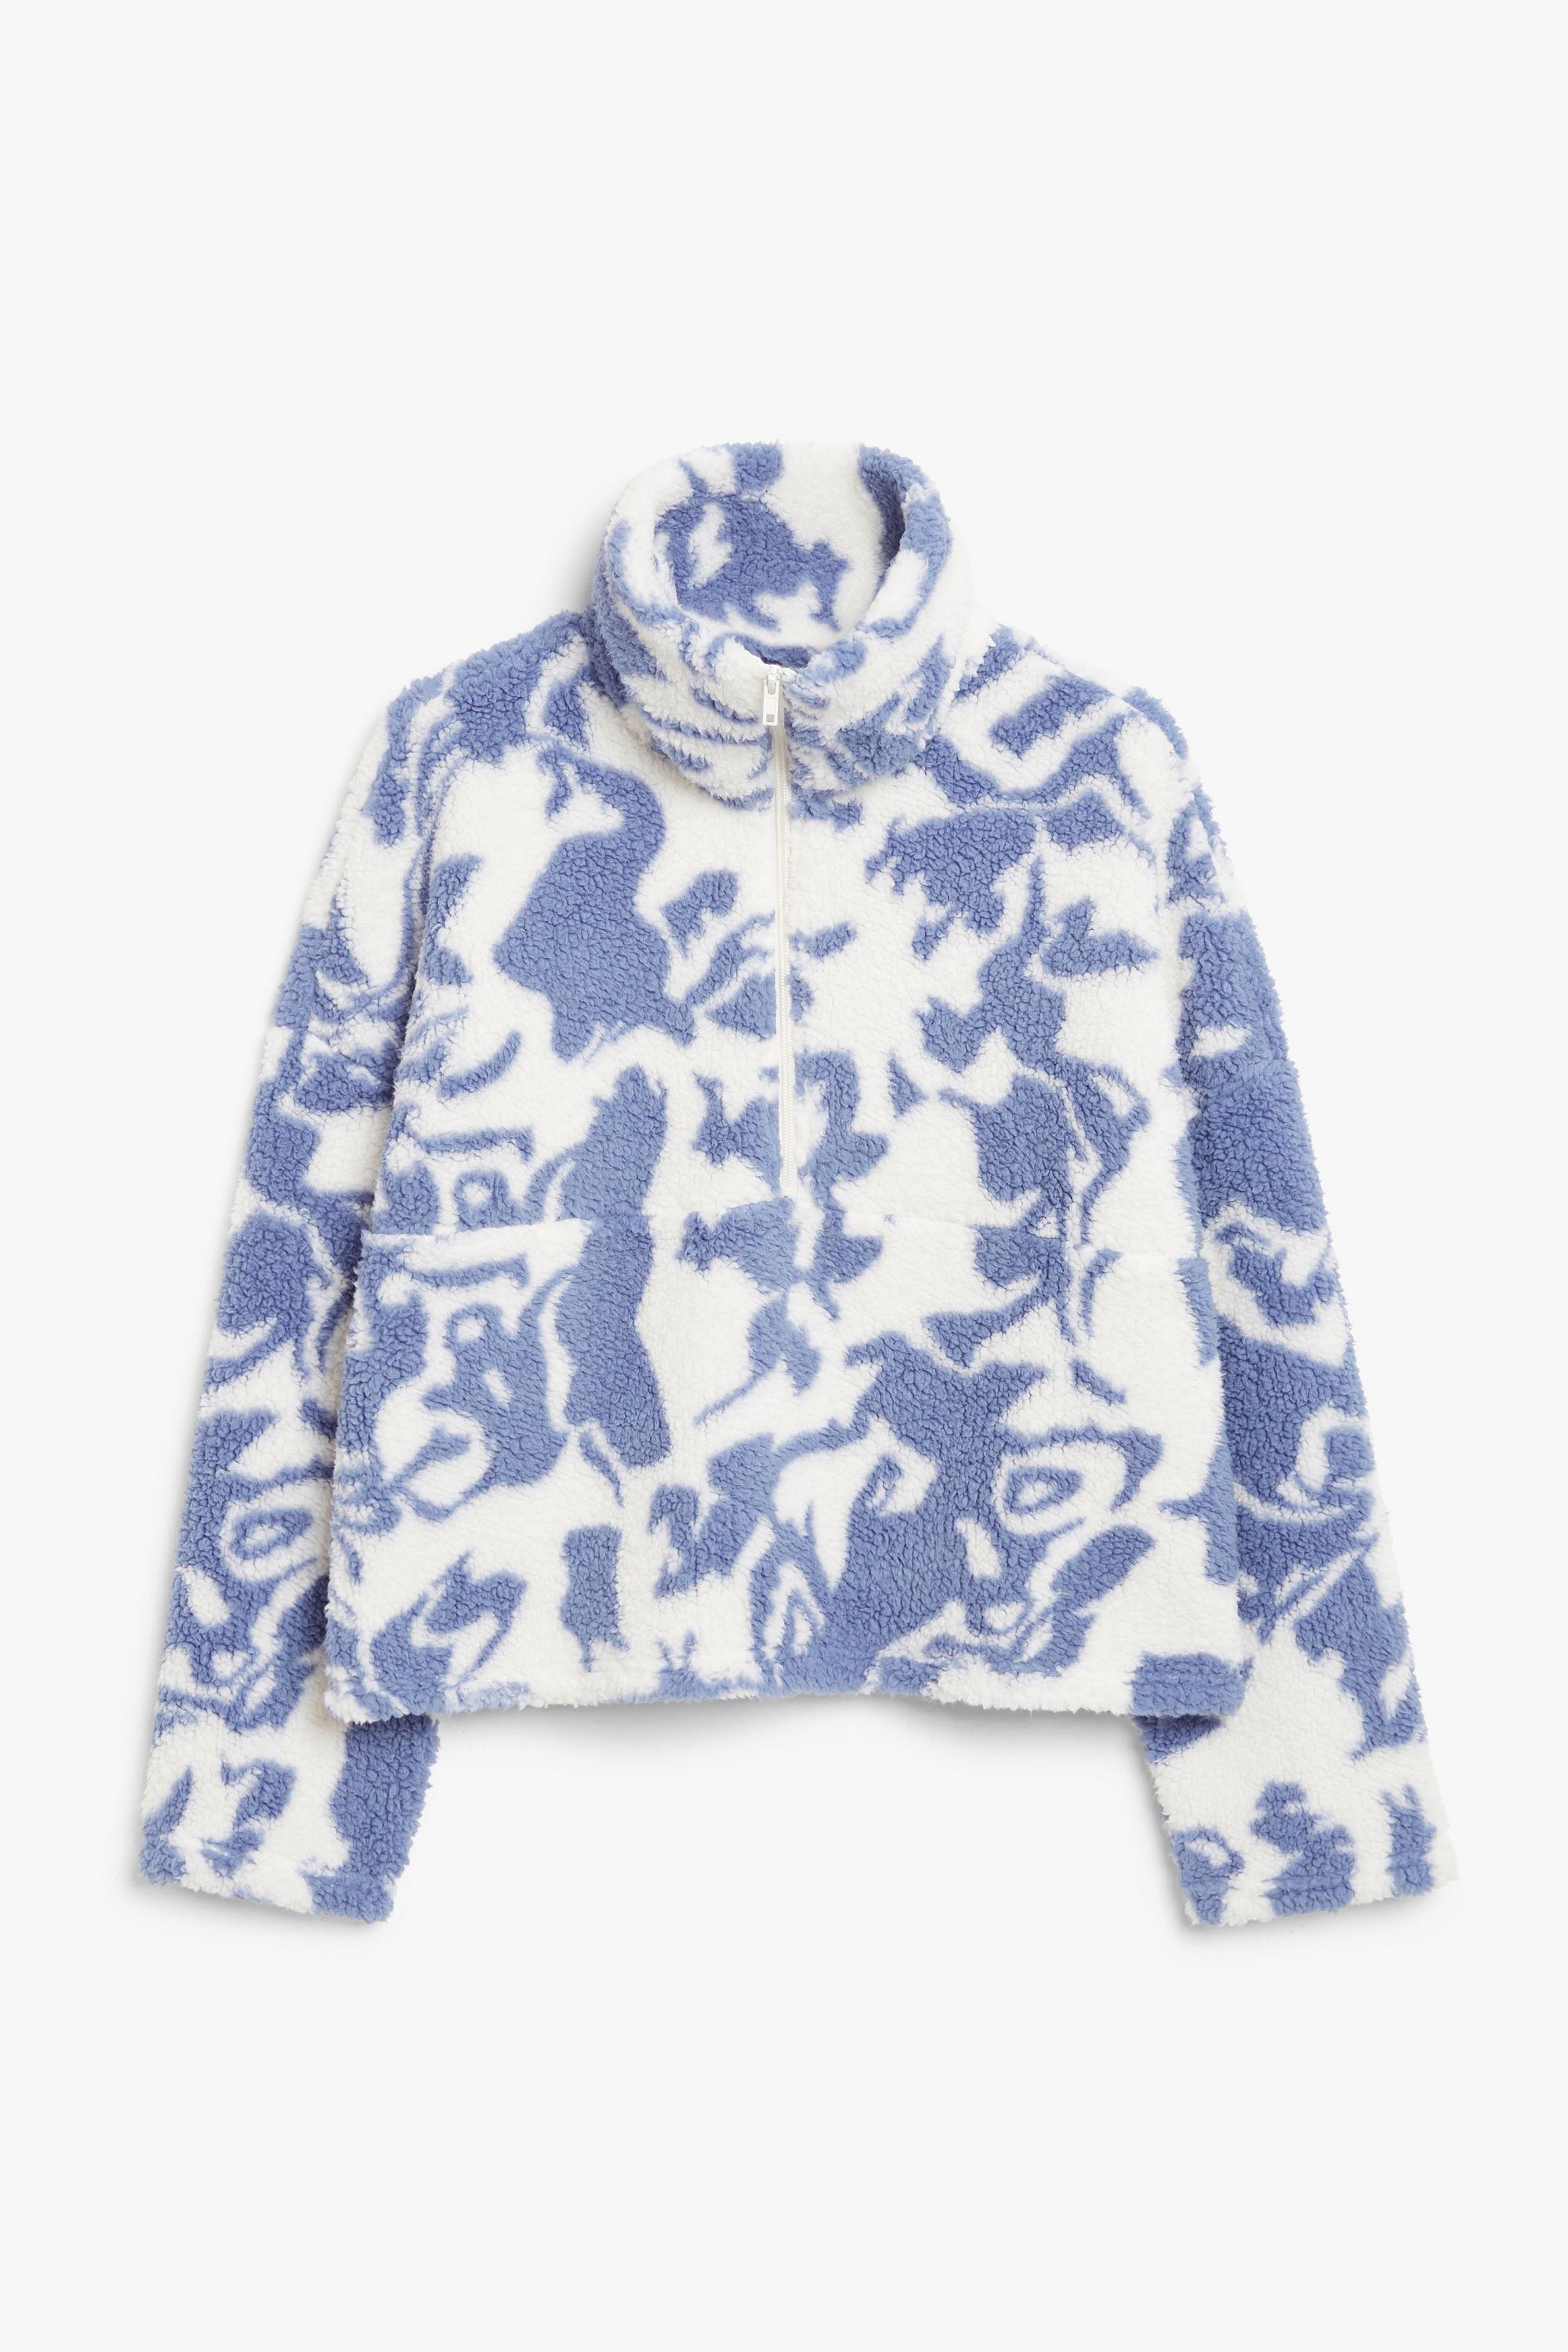 Monki Faux Fleece Zip Sweater in Blue | Lyst Canada